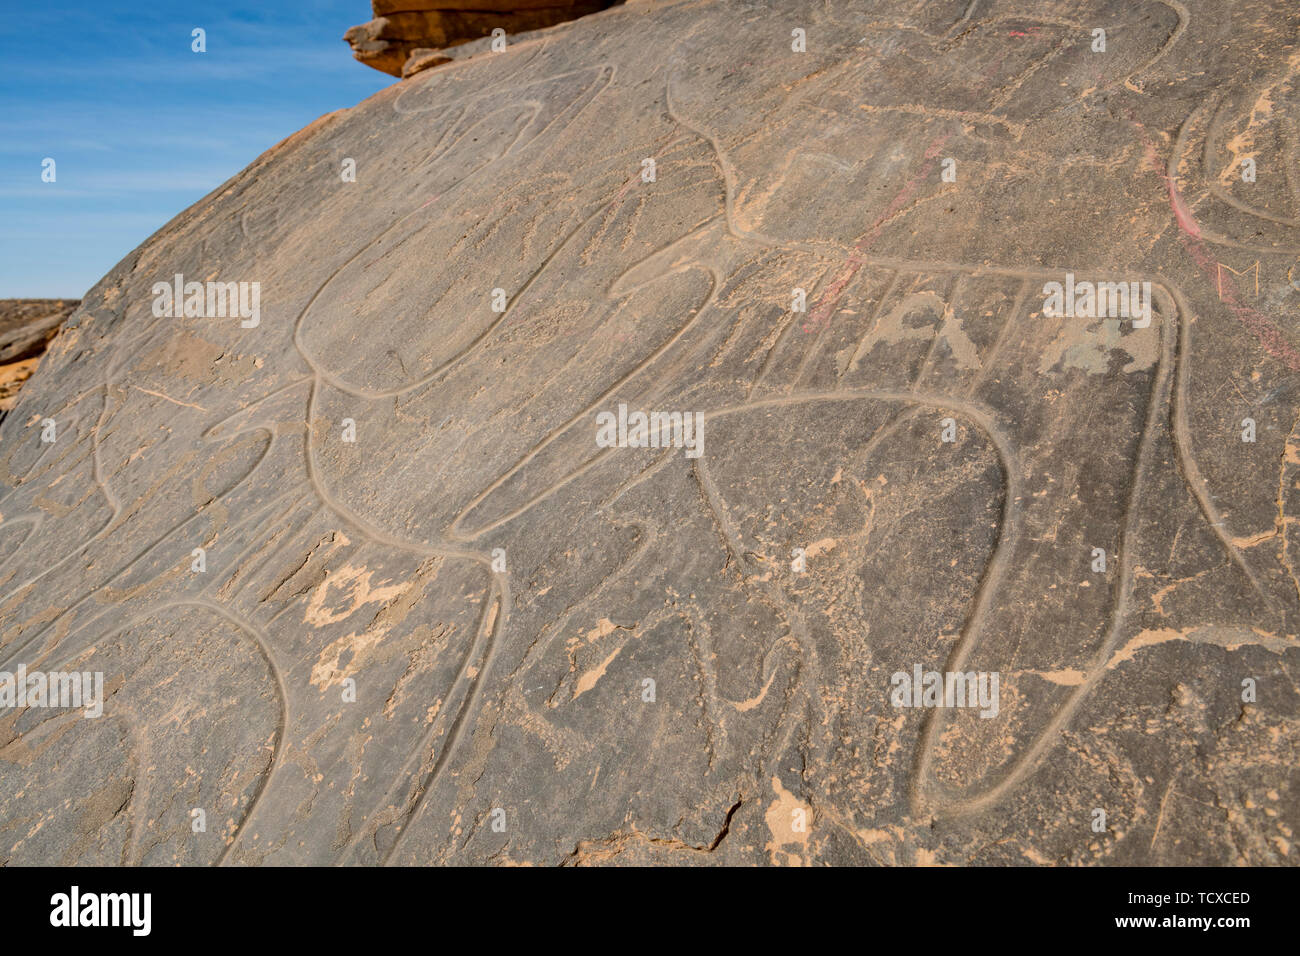 Sculptures rupestres préhistoriques près de l'Oasis de Taghit, ouest de l'Algérie, l'Afrique du Nord, Afrique Banque D'Images